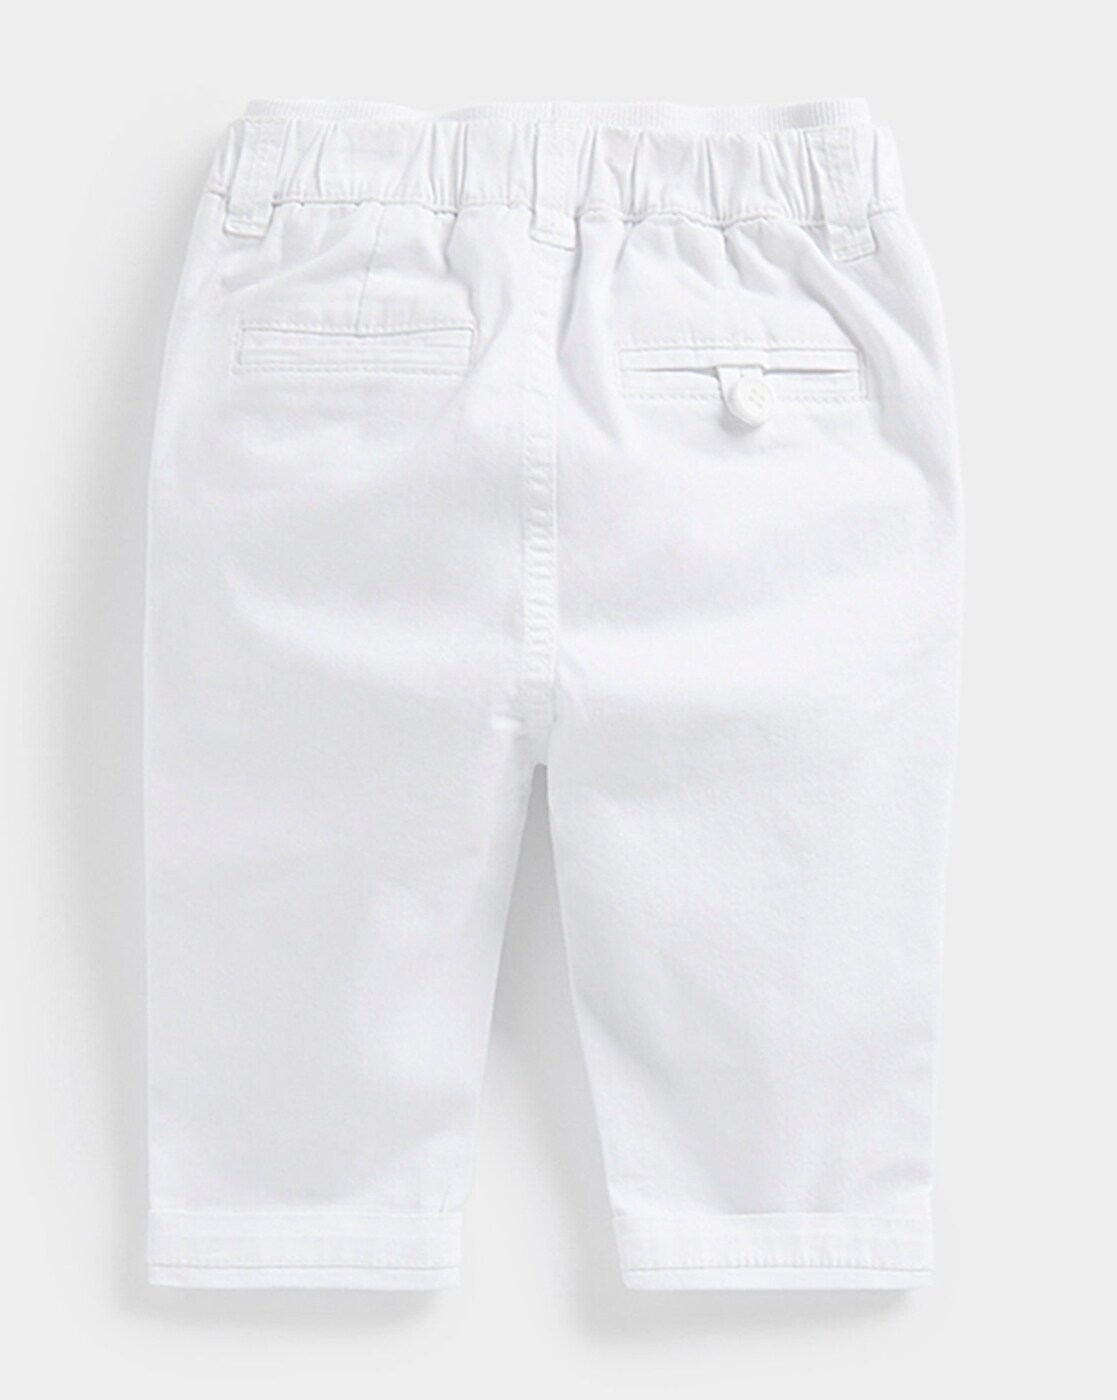 Le Temps Des Cerises Denim shorts blanc  White shorts Shorts White jean  shorts